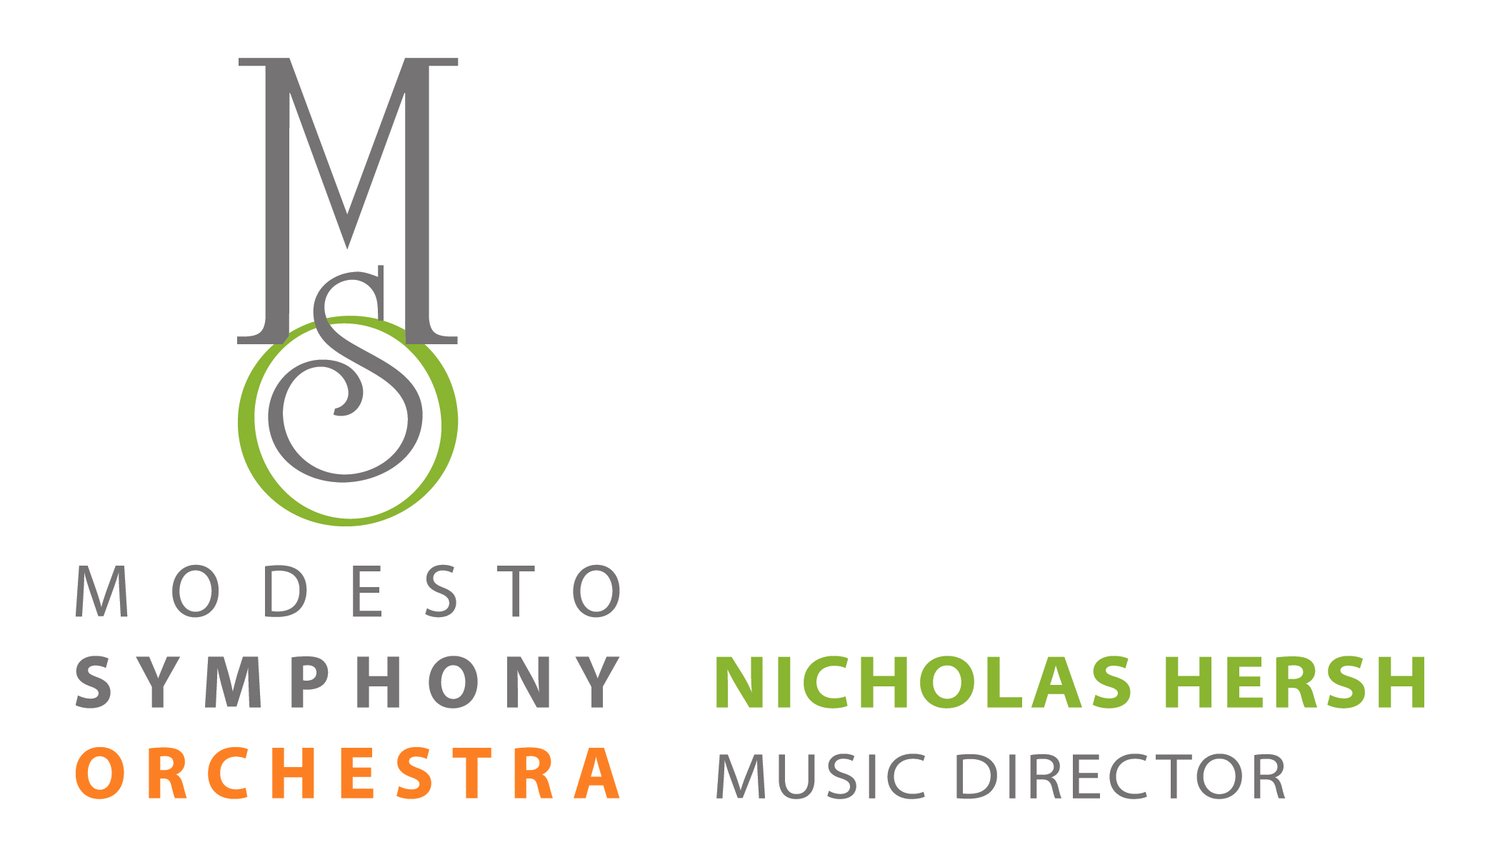 Modesto Symphony Orchestra